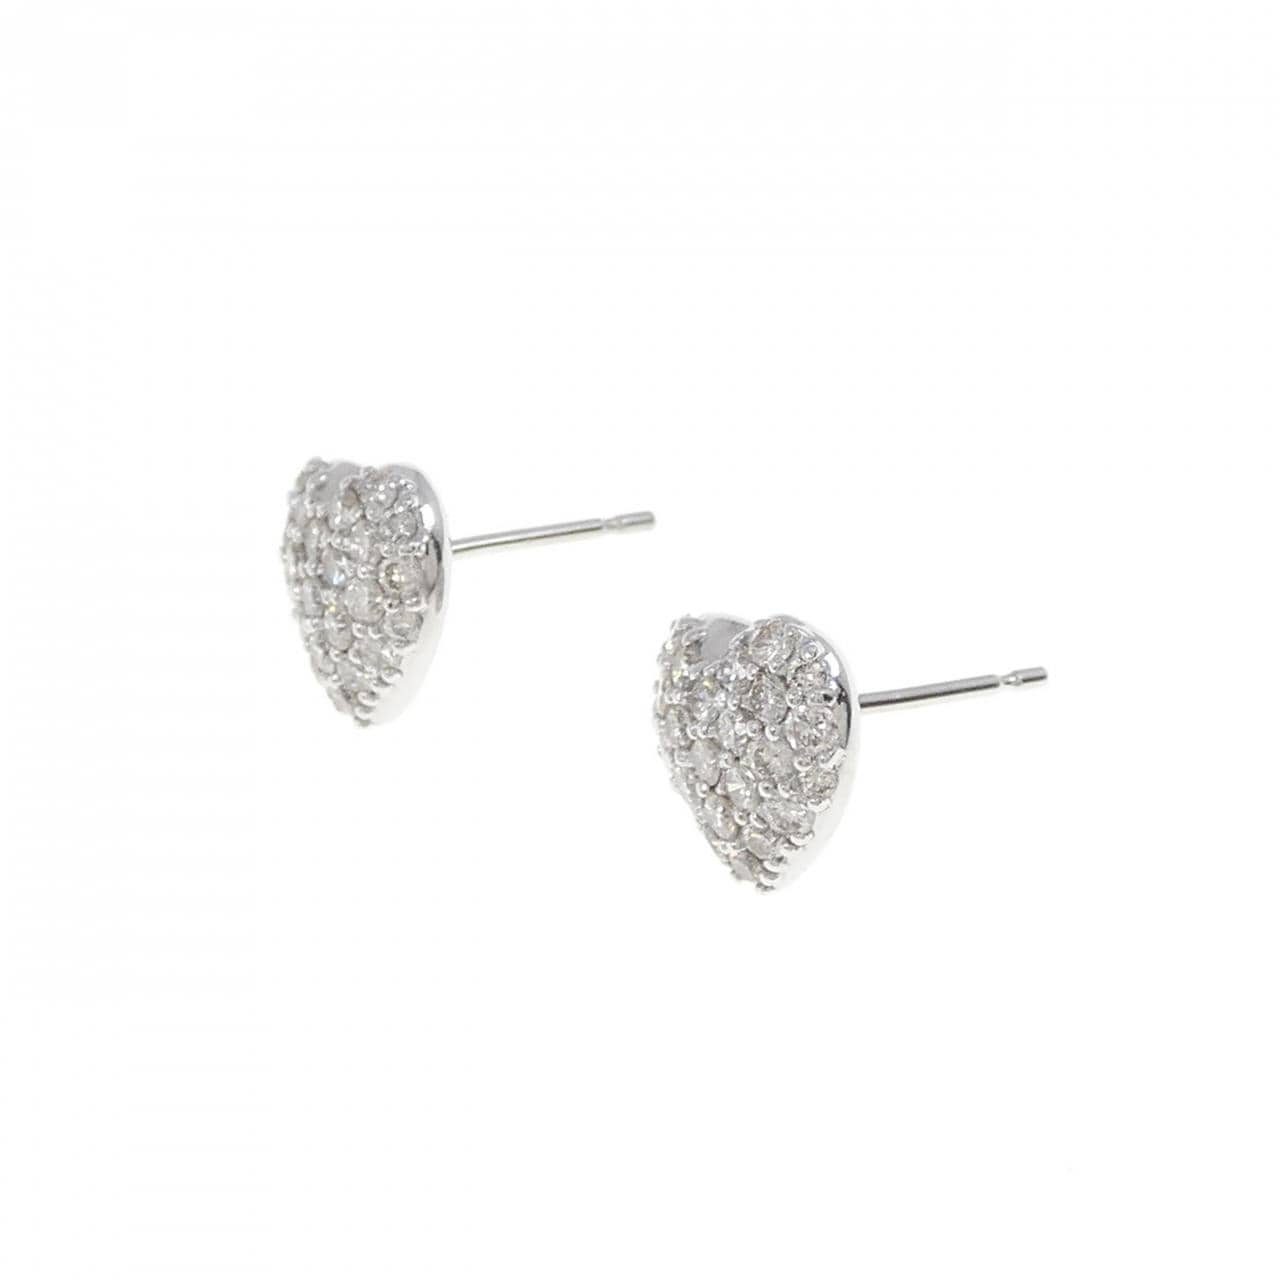 K18WG Pave Heart Diamond Earrings 1.00CT